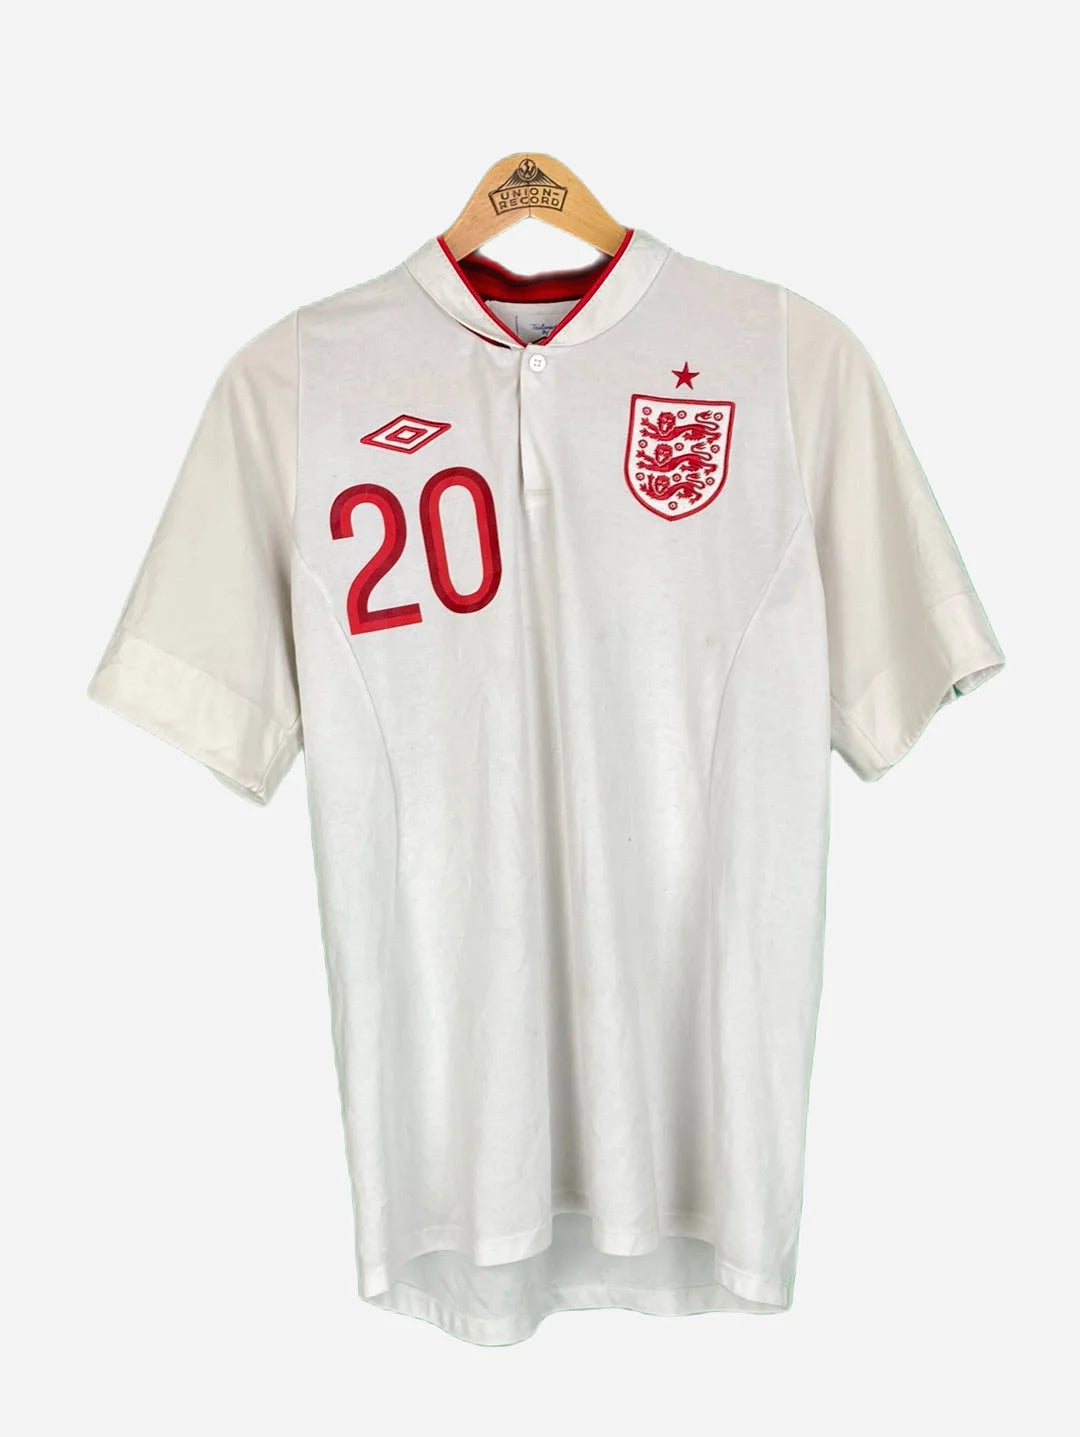 Umbro England T-Shirt (L)